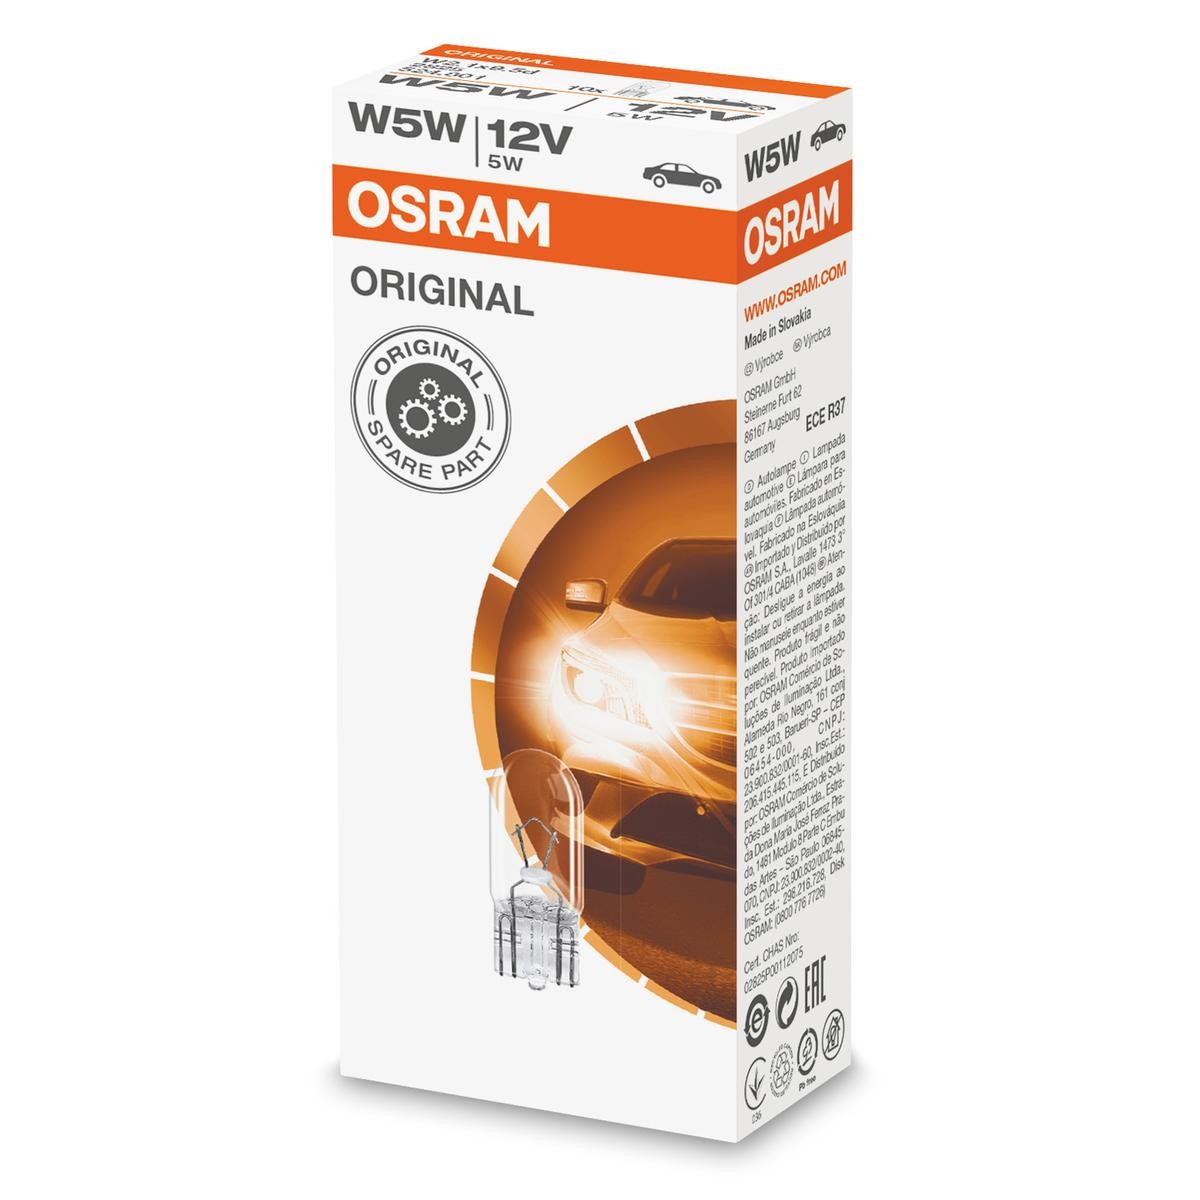 Opel OMEGA onderdelen in originele kwaliteit W5W OSRAM 2825